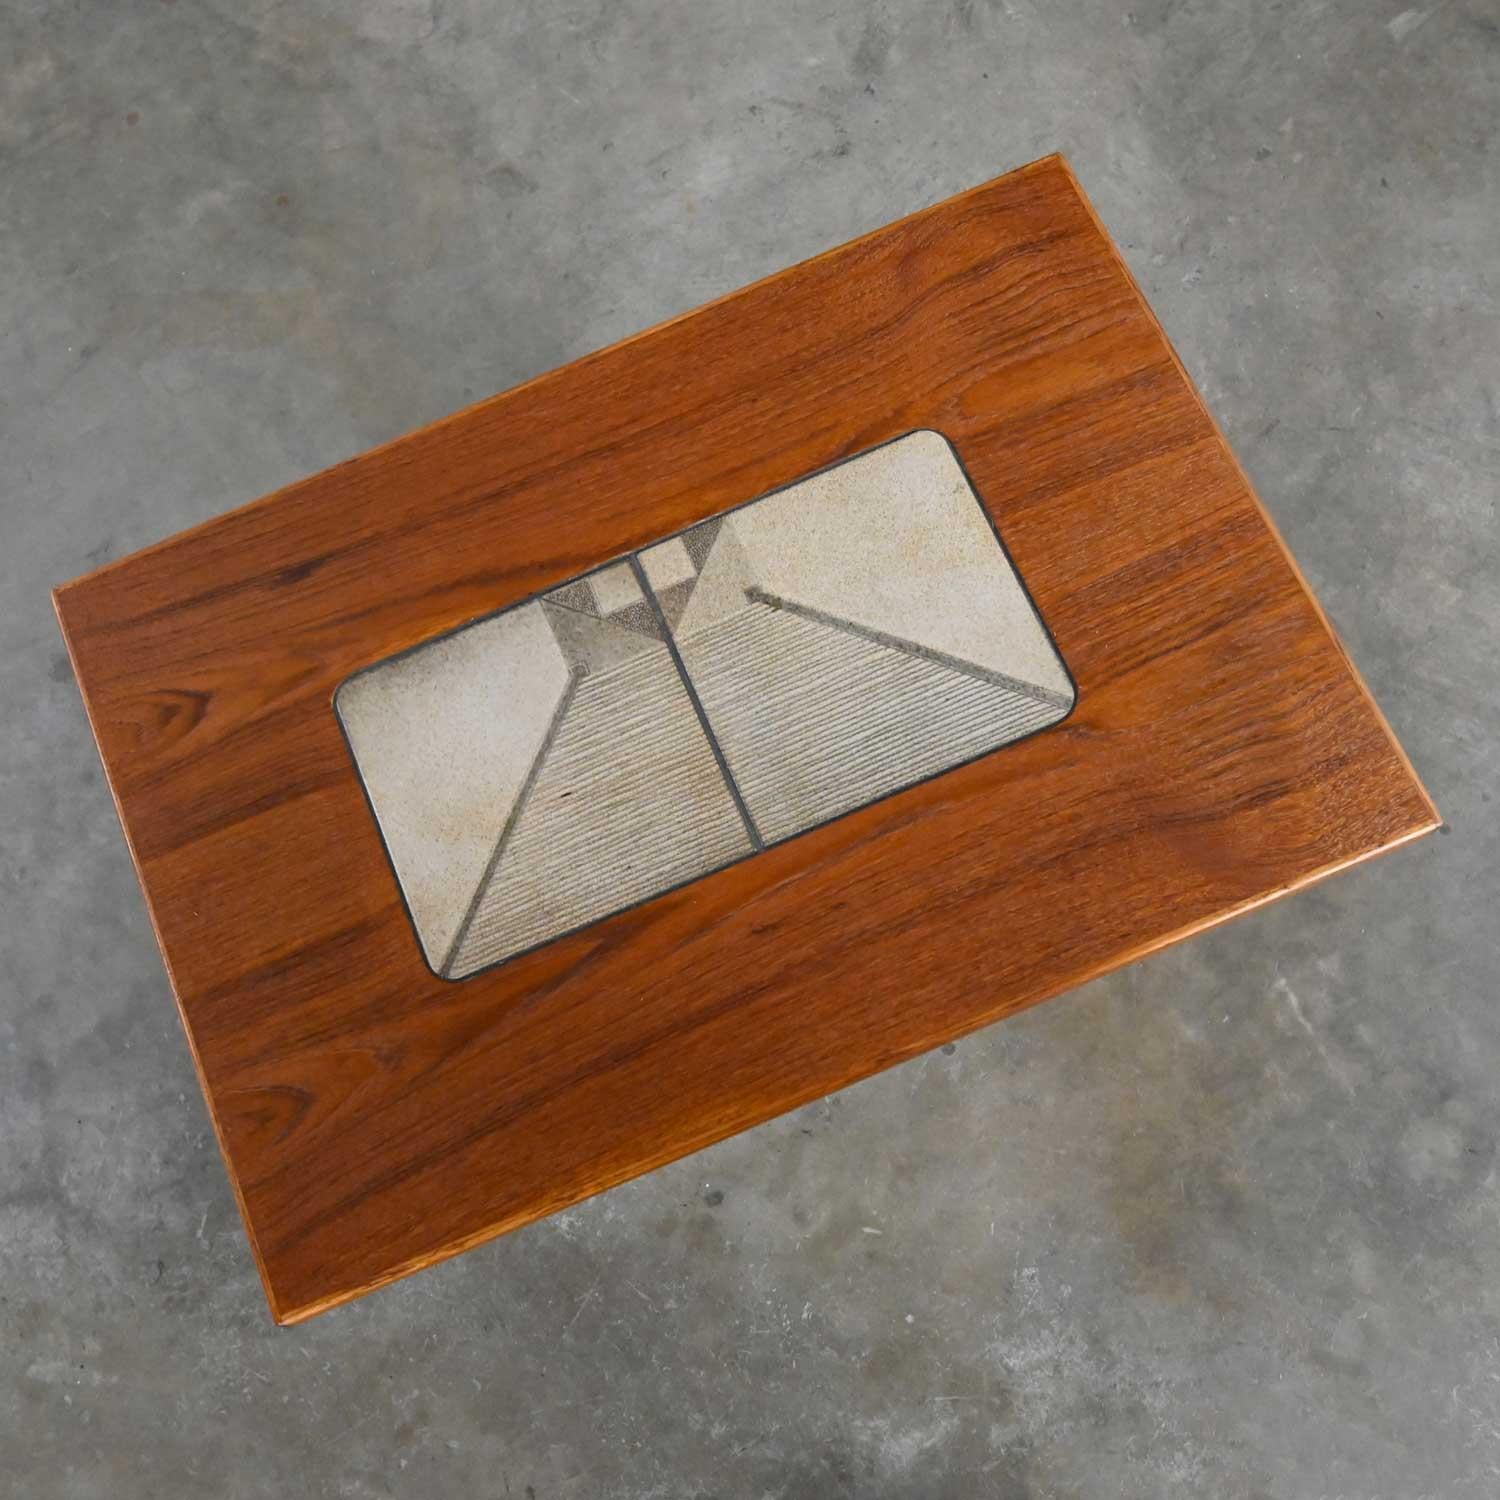 20th Century Scandinavian Modern Teak Rectangular Side End Table Tile Insert by Gangso Mobler For Sale